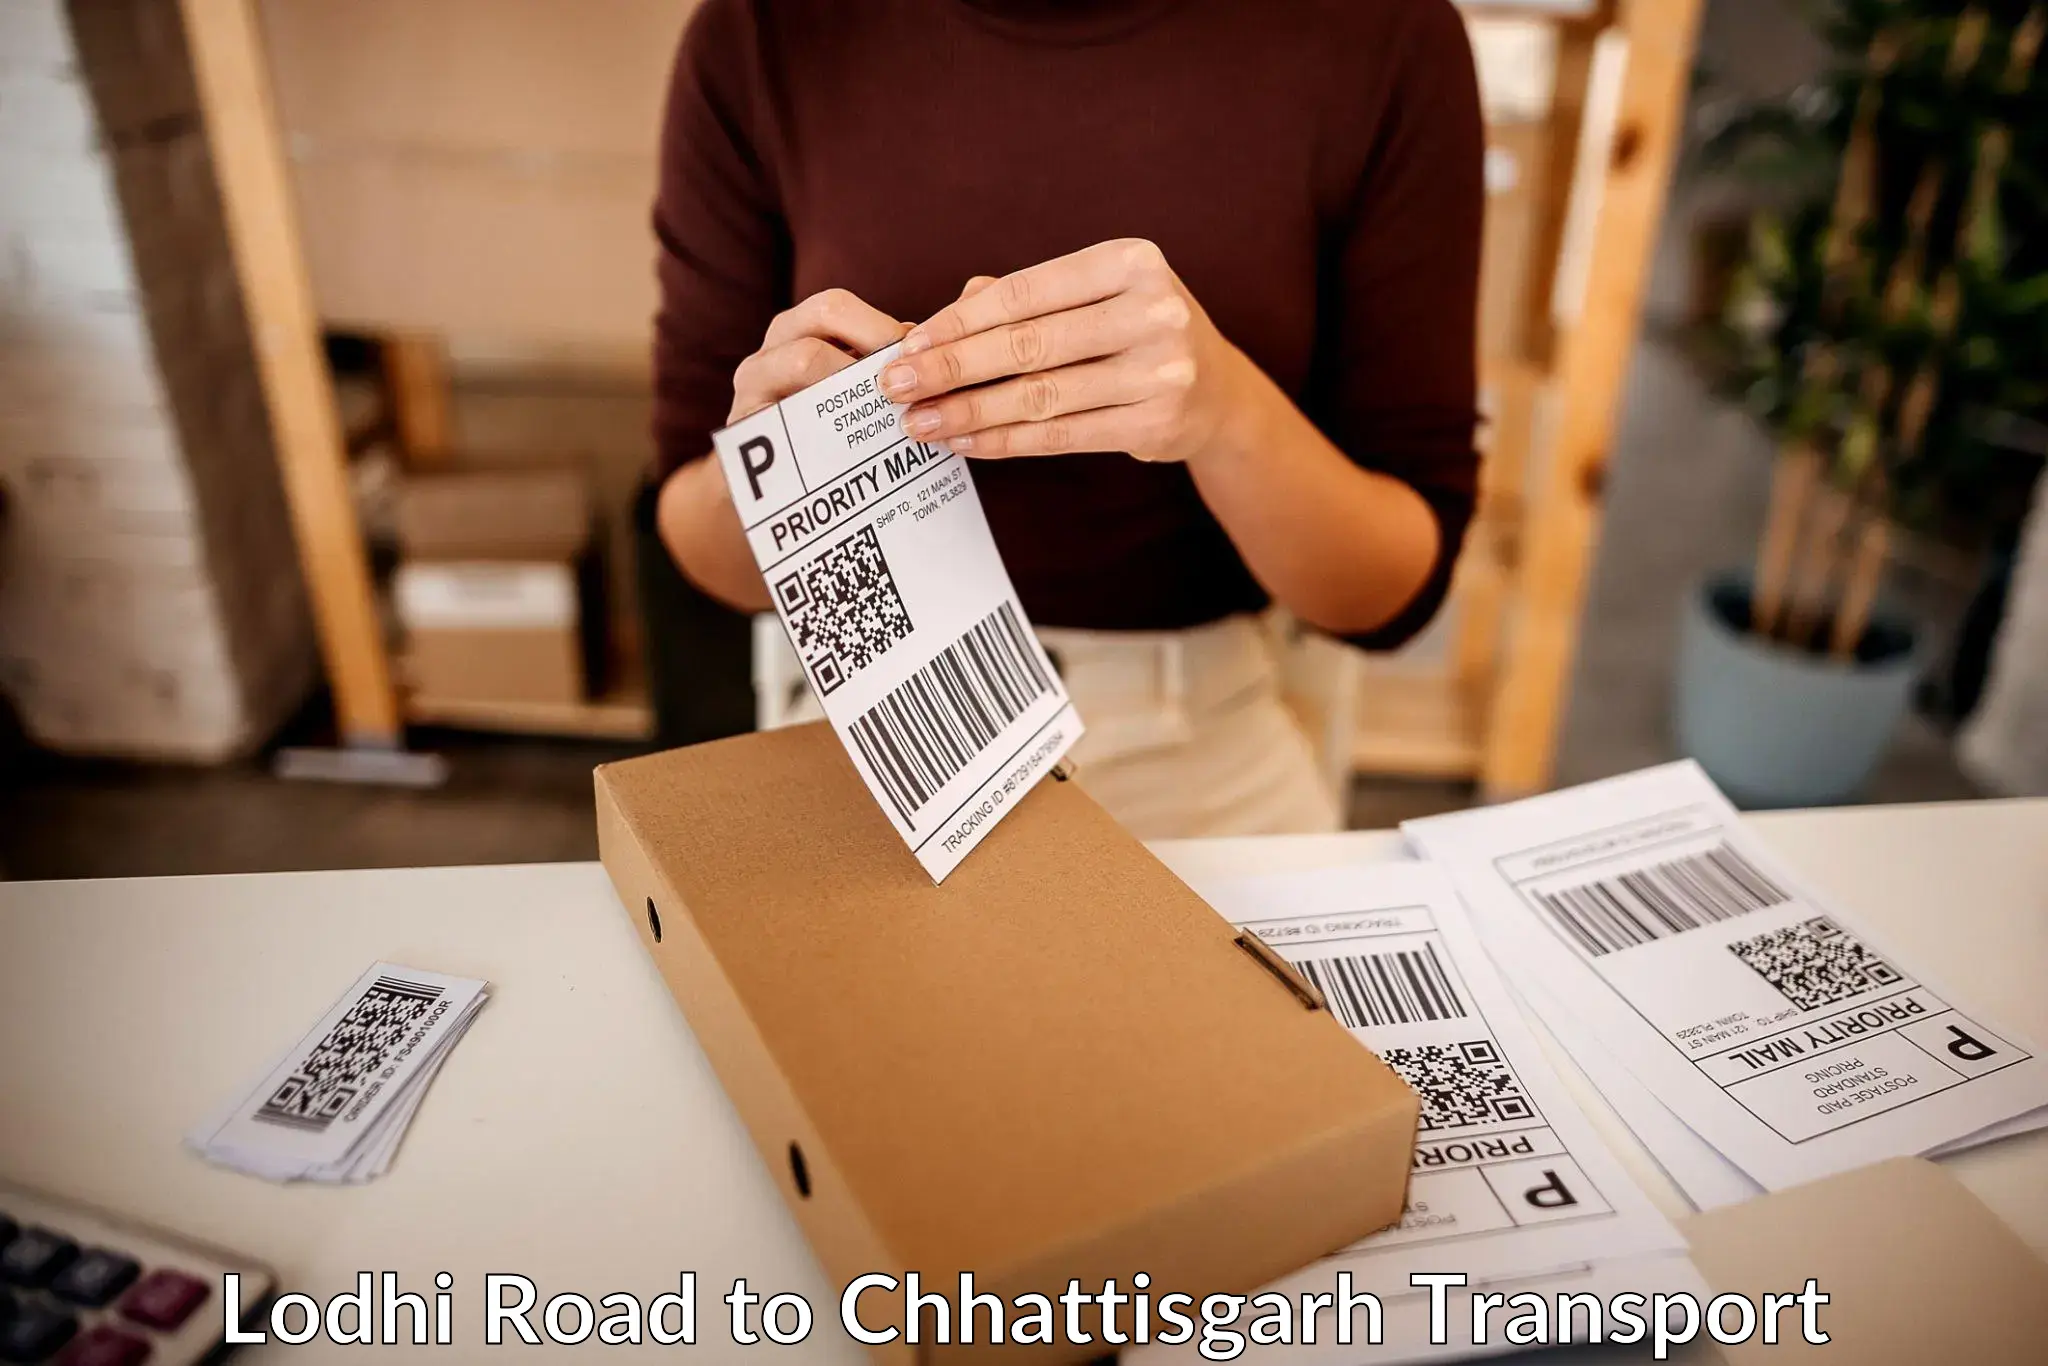 Delivery service Lodhi Road to Chhattisgarh